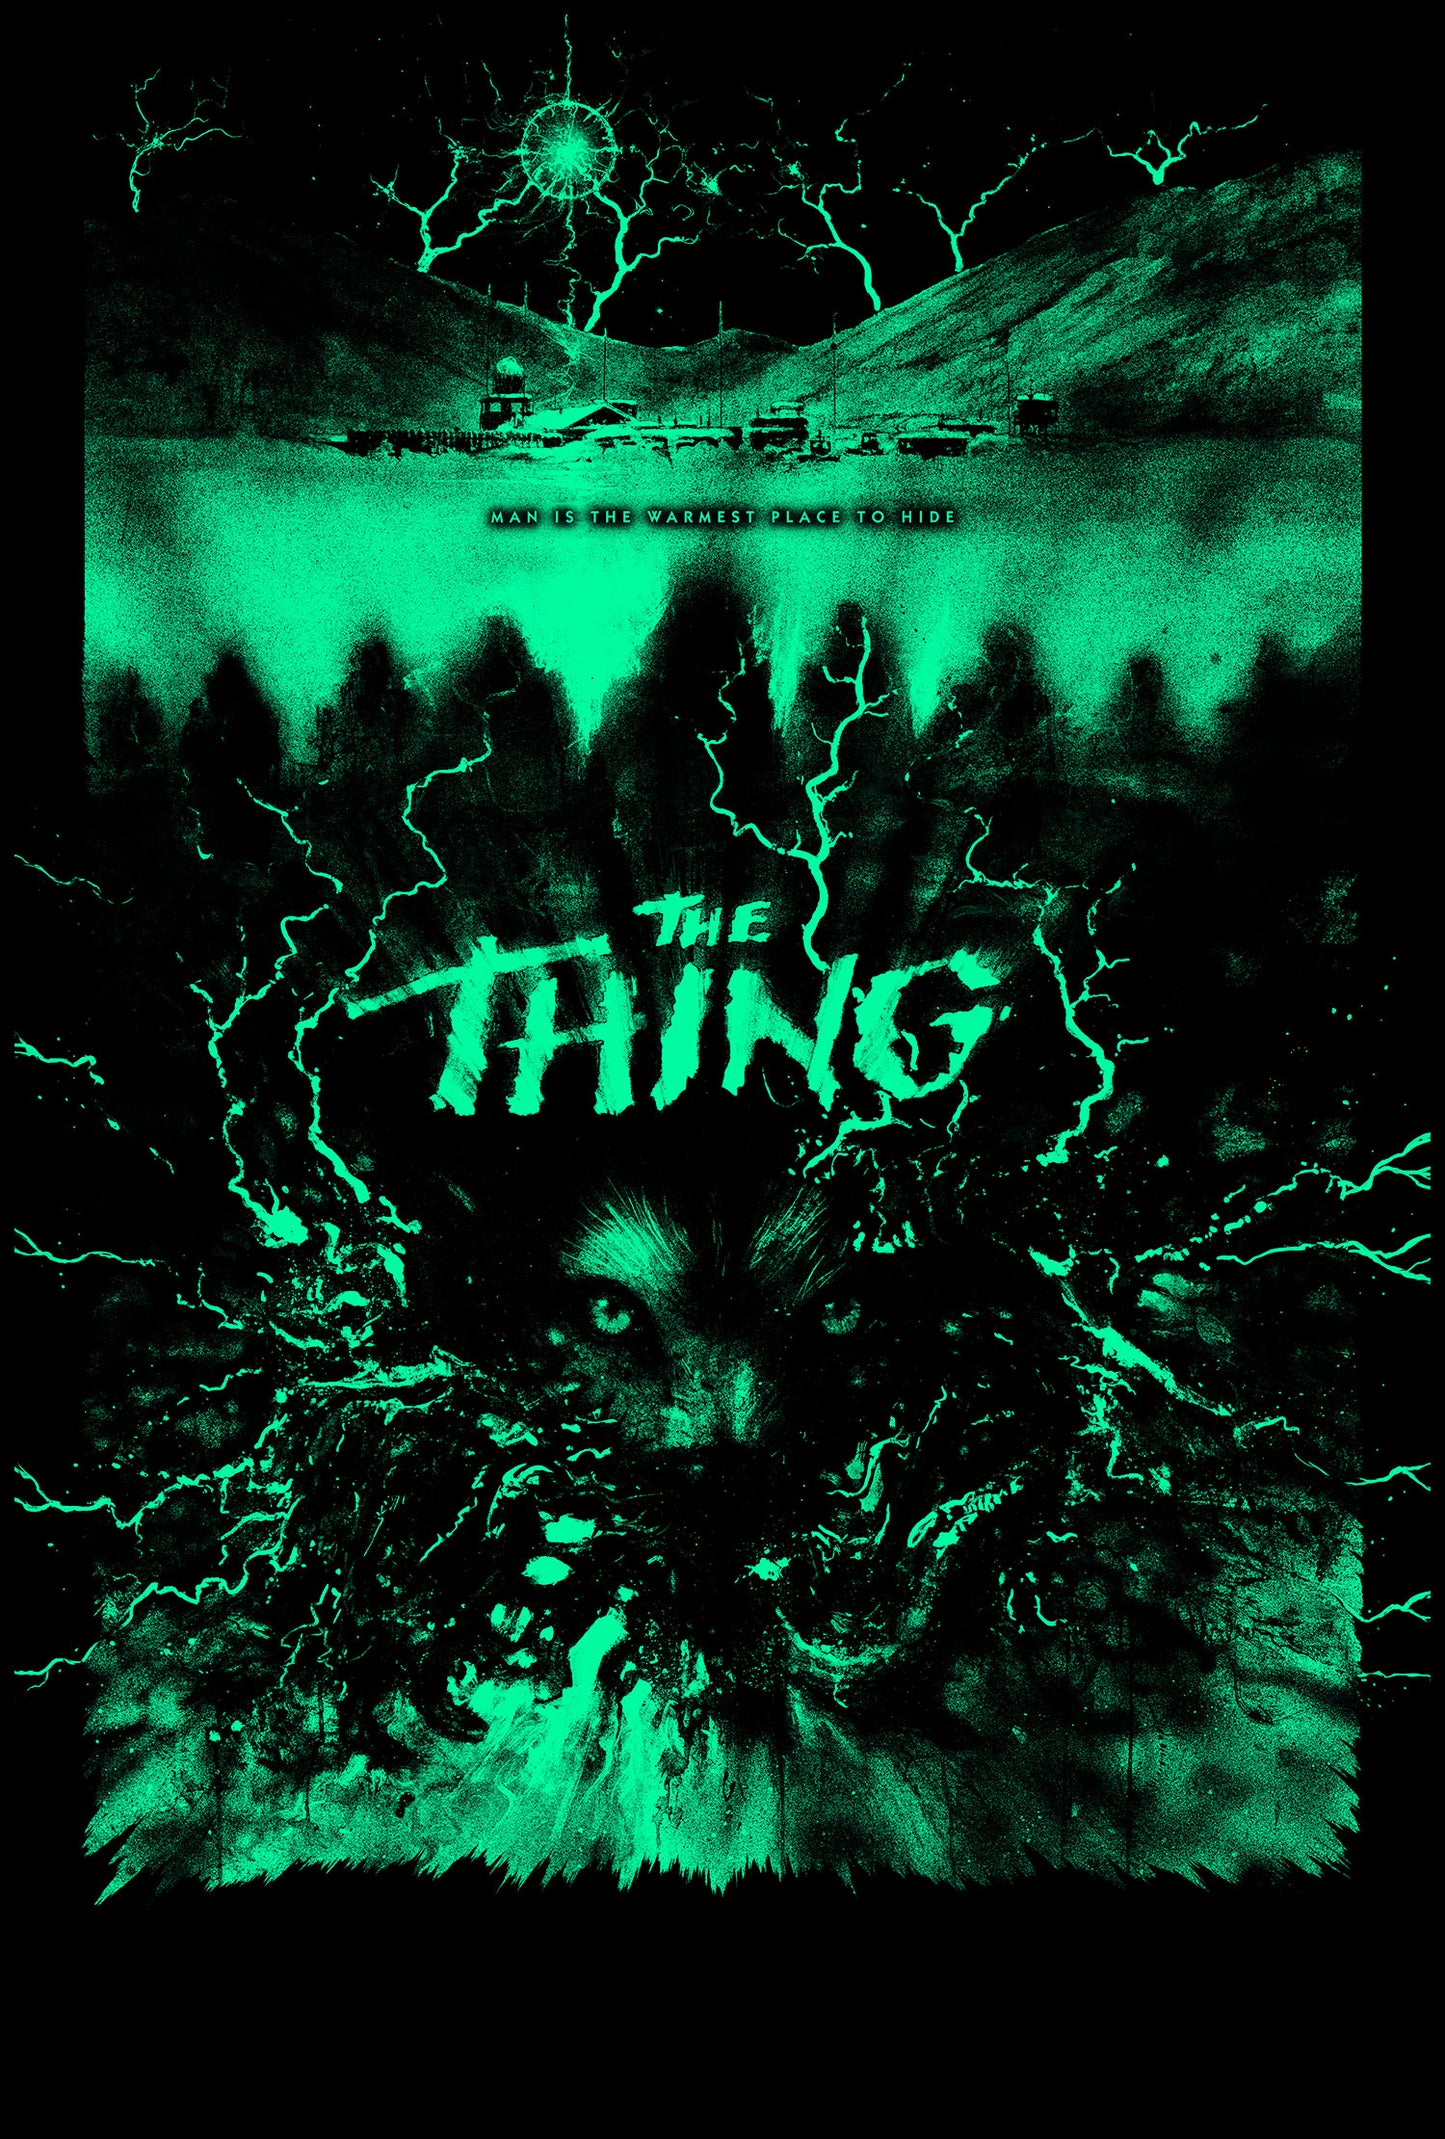 Matthew Peak "The Thing" AP